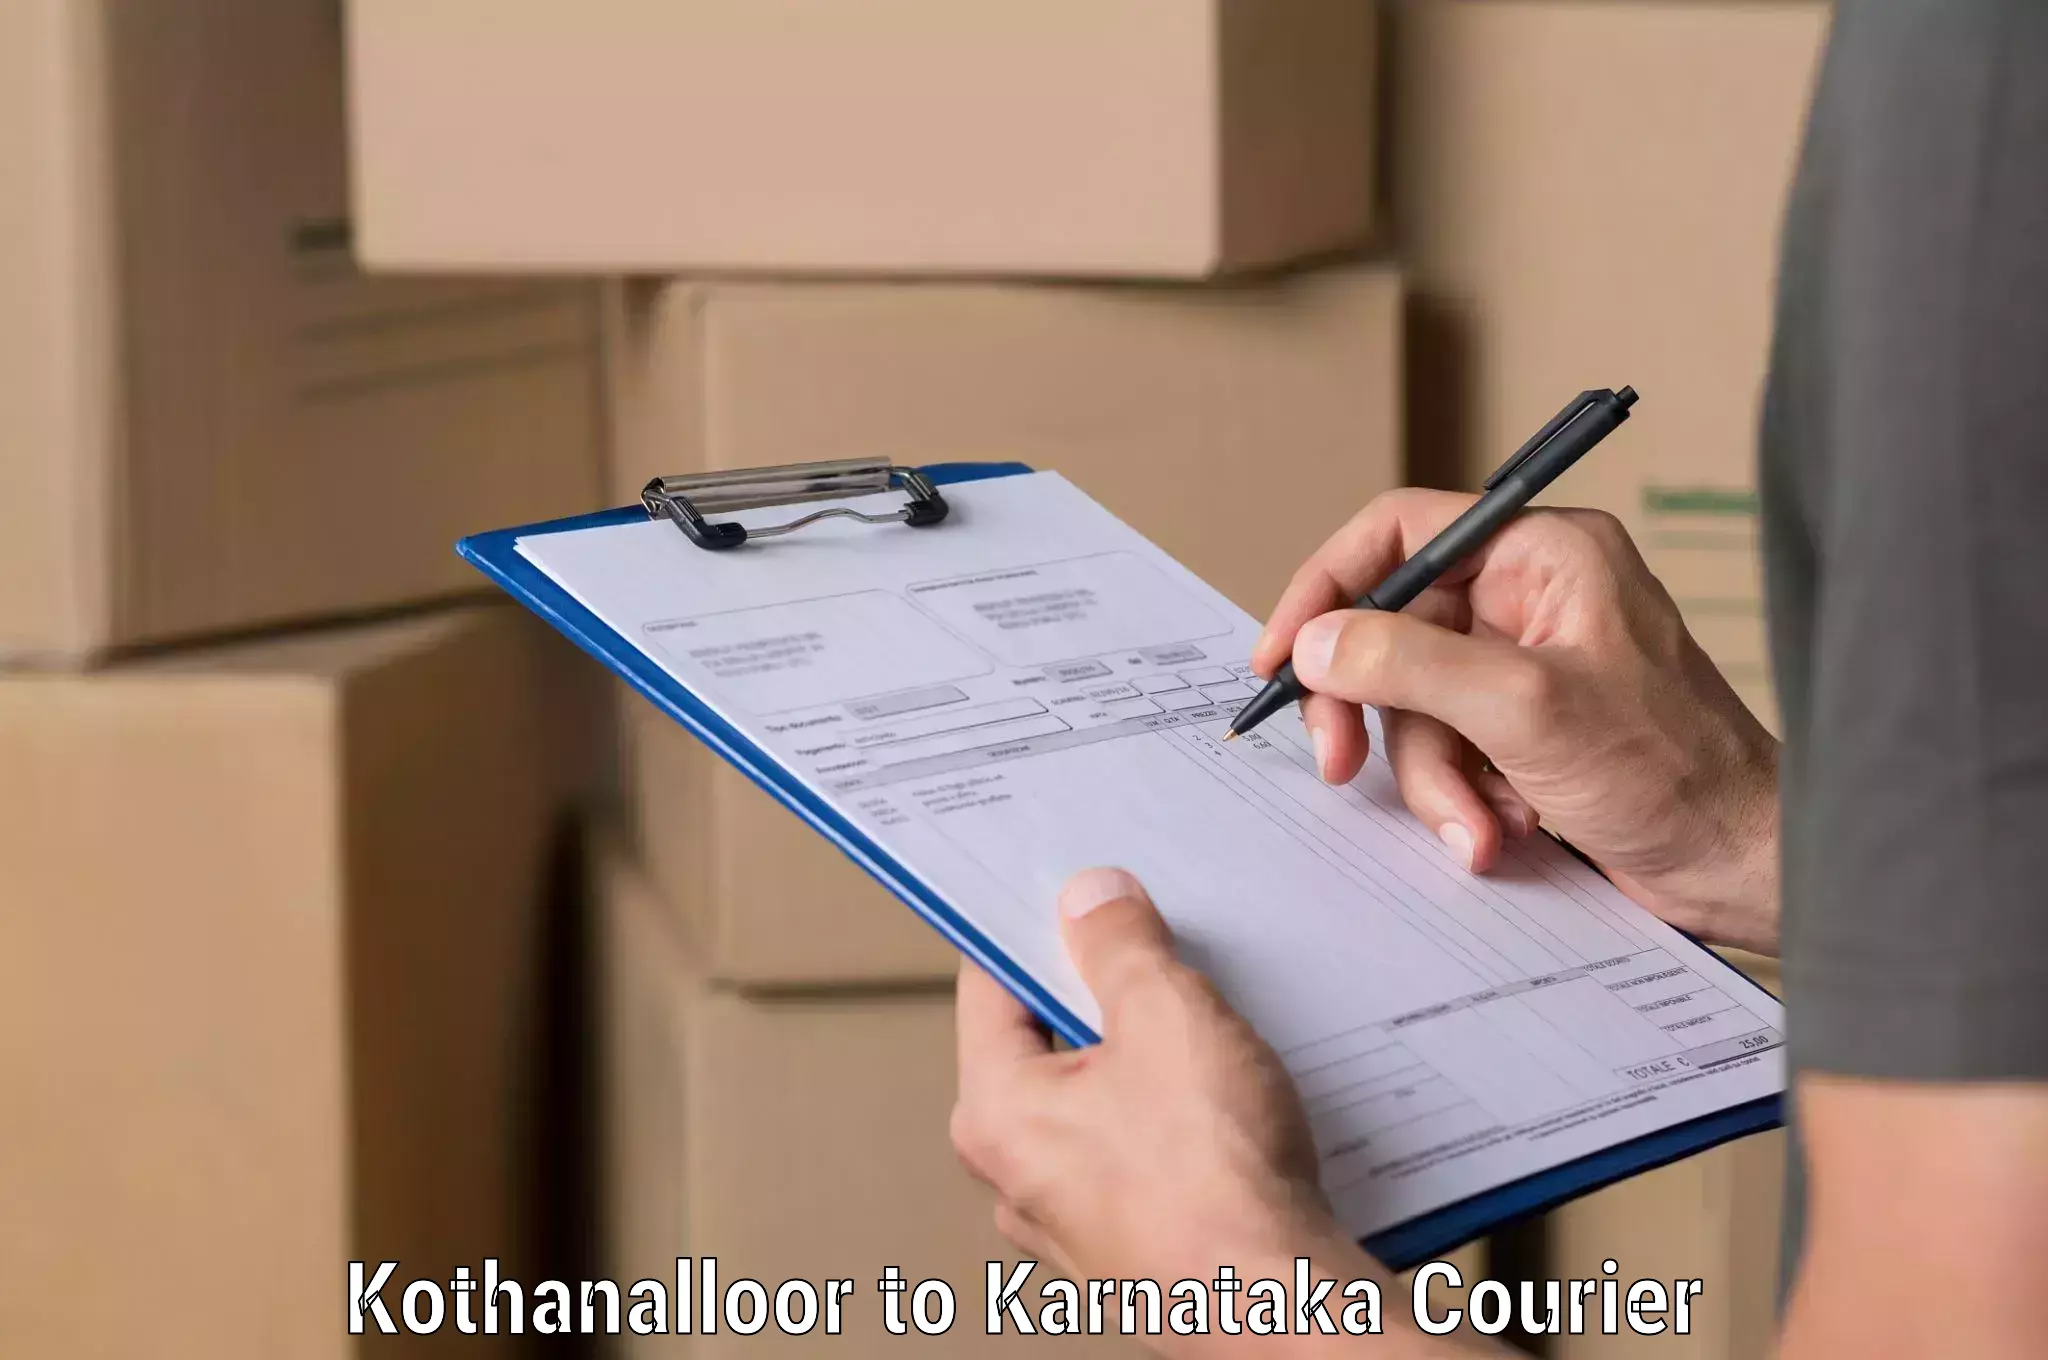 Efficient shipping platforms Kothanalloor to Karnataka